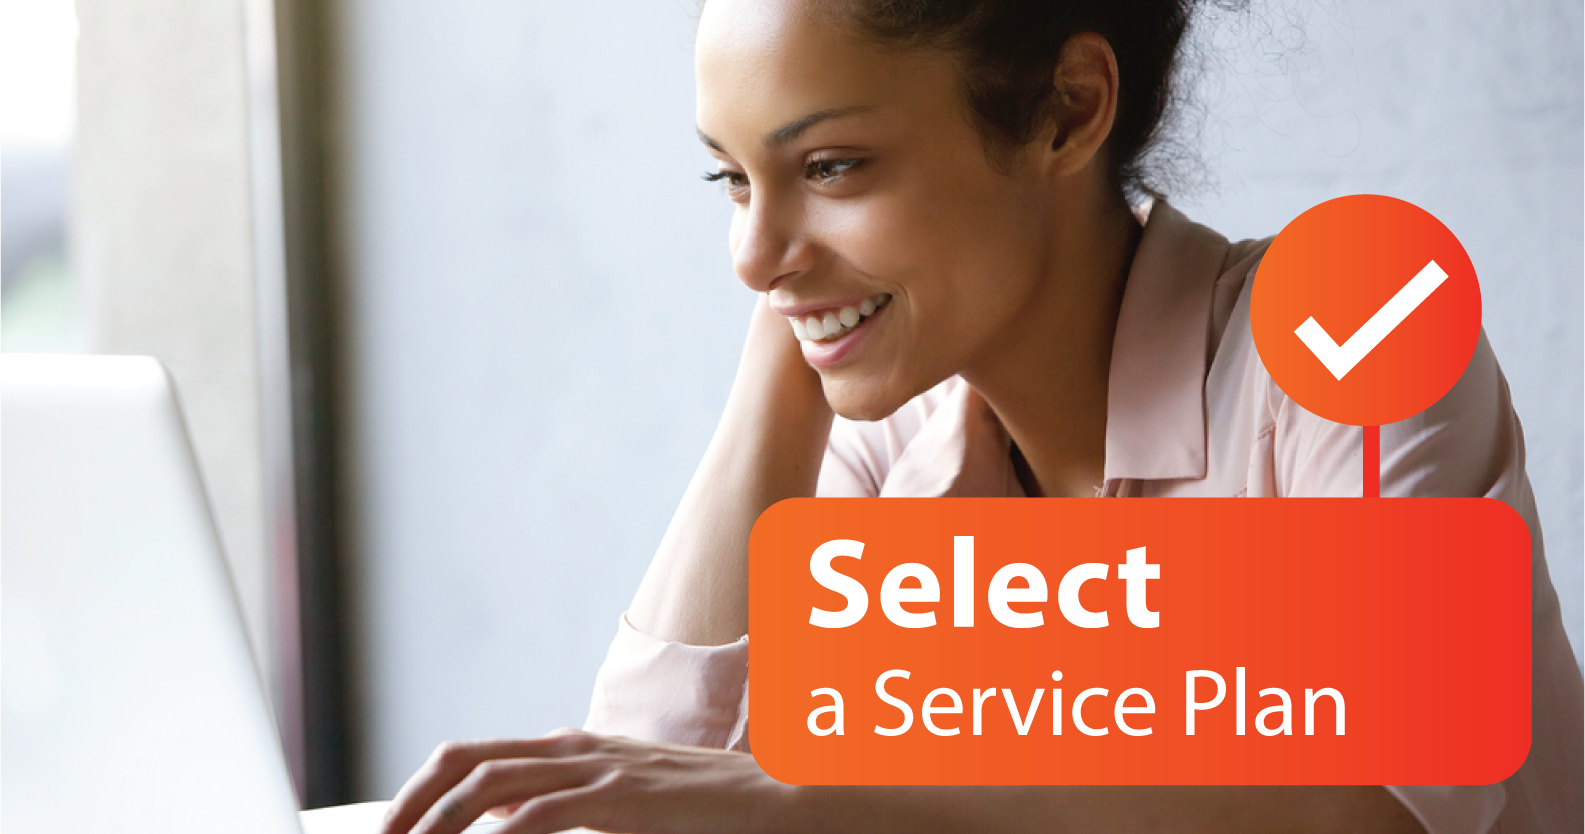 Select a service plan.